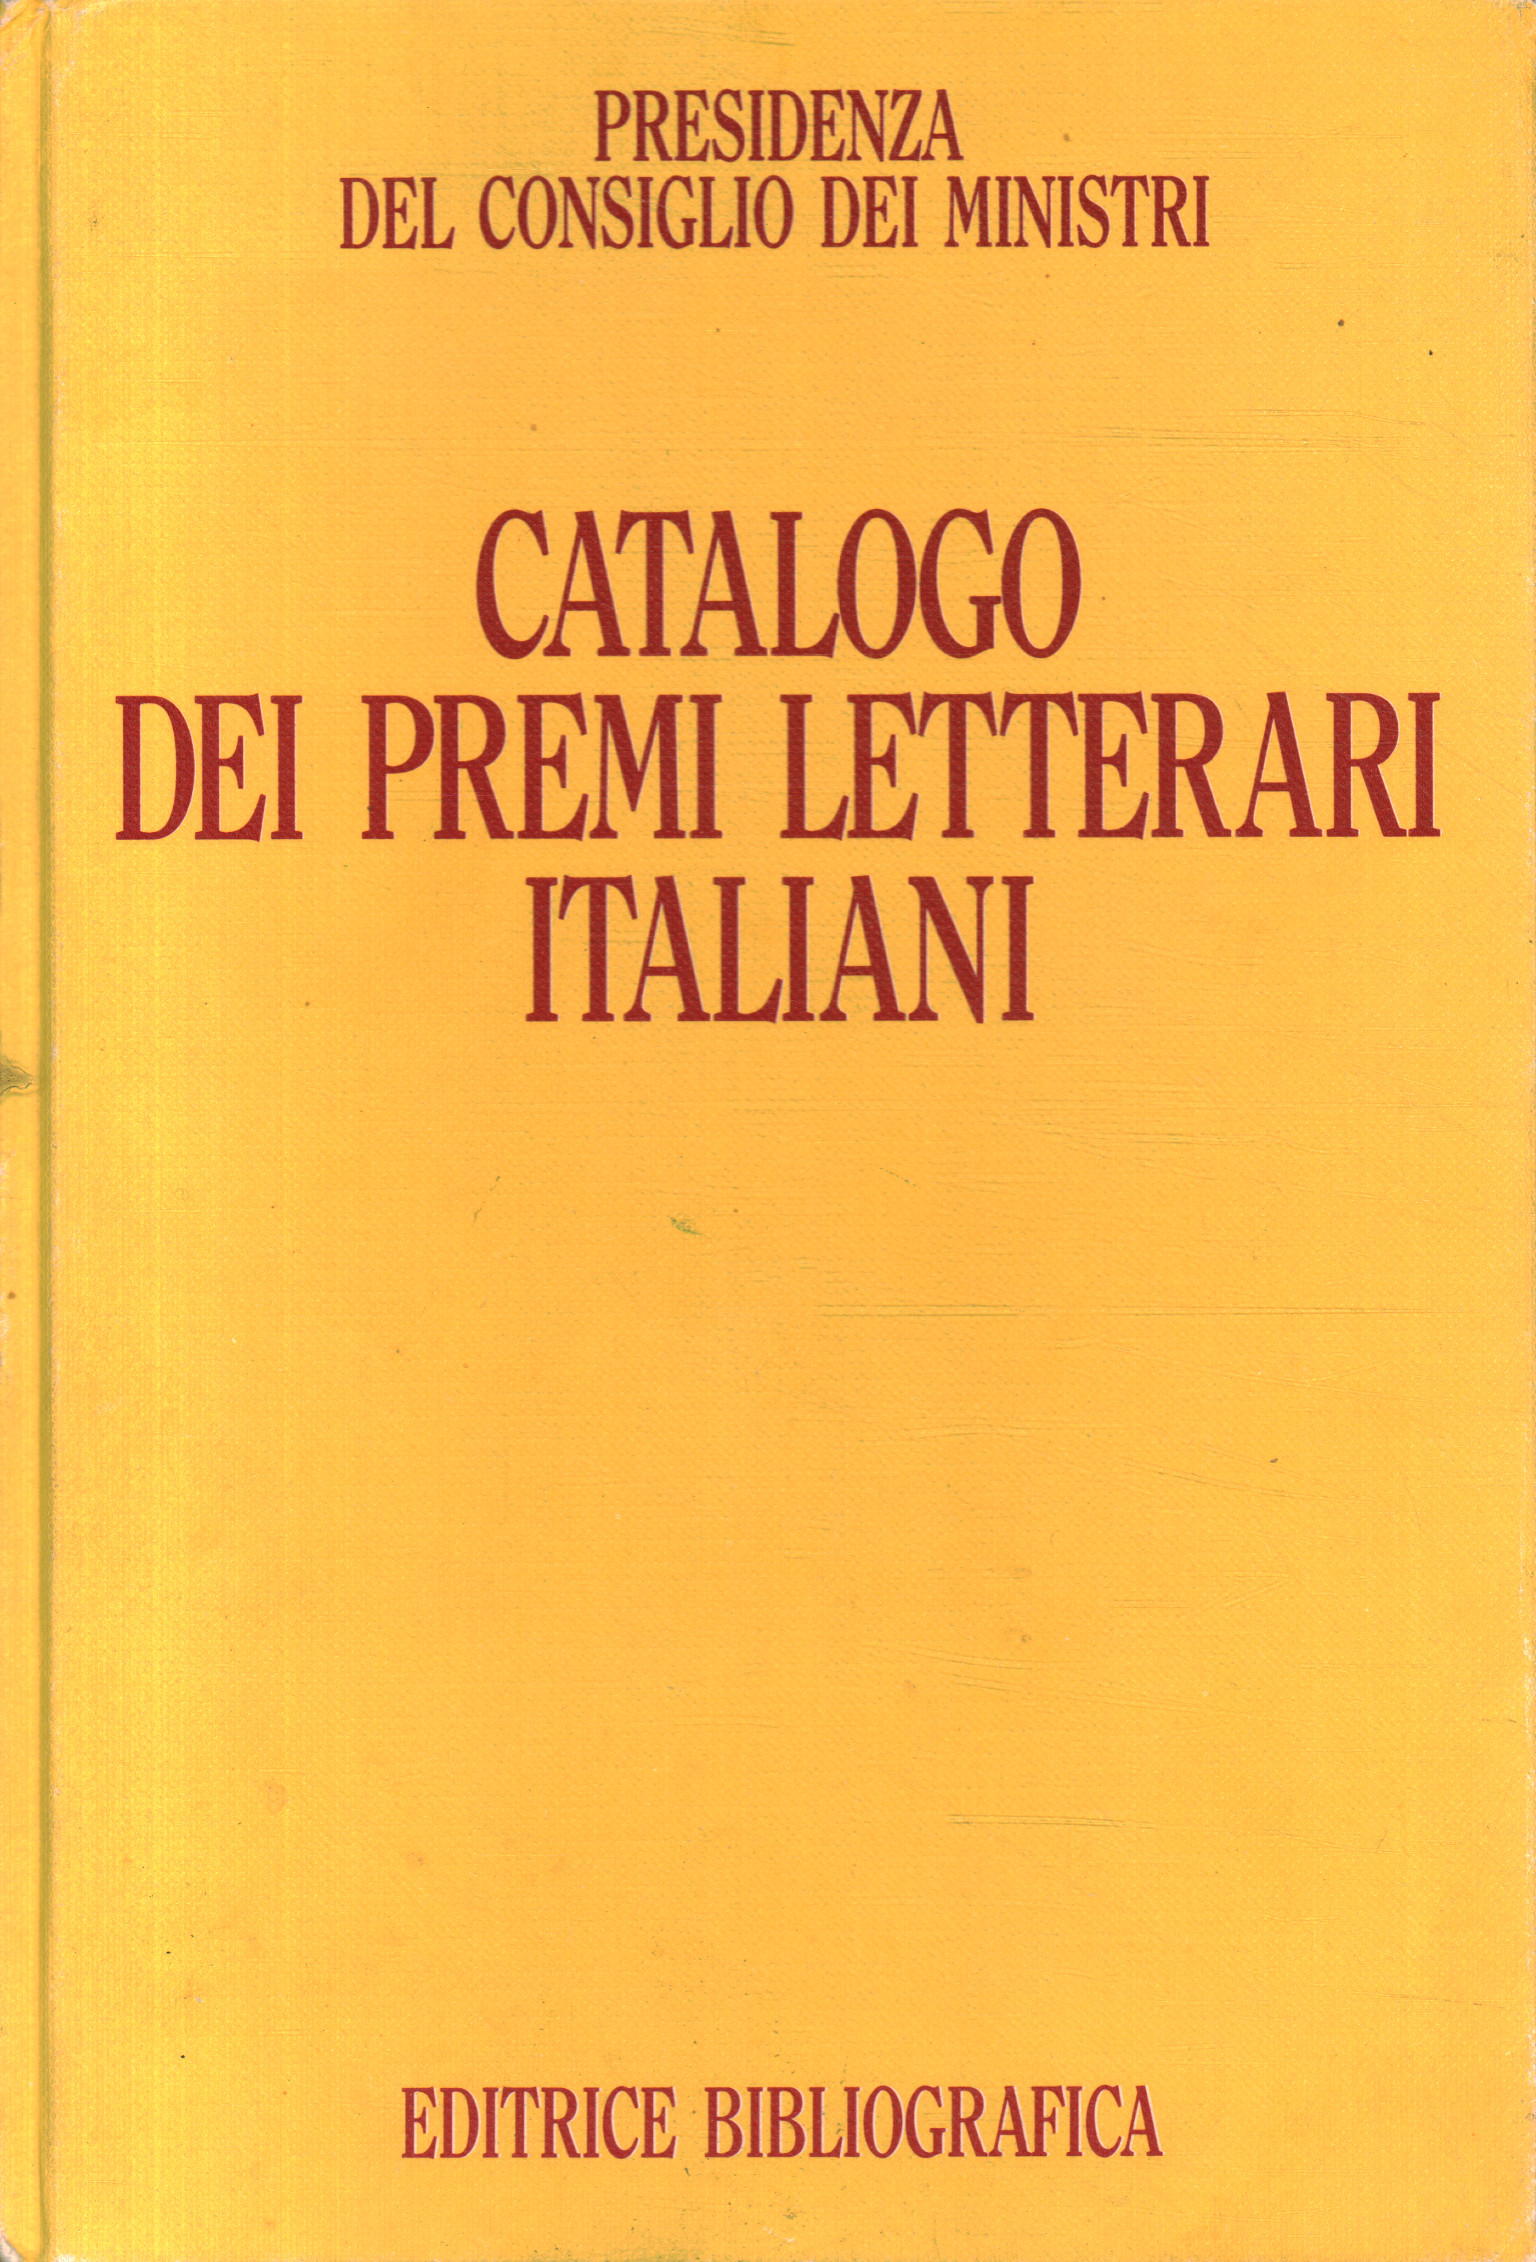 Katalog der italienischen Literaturpreise